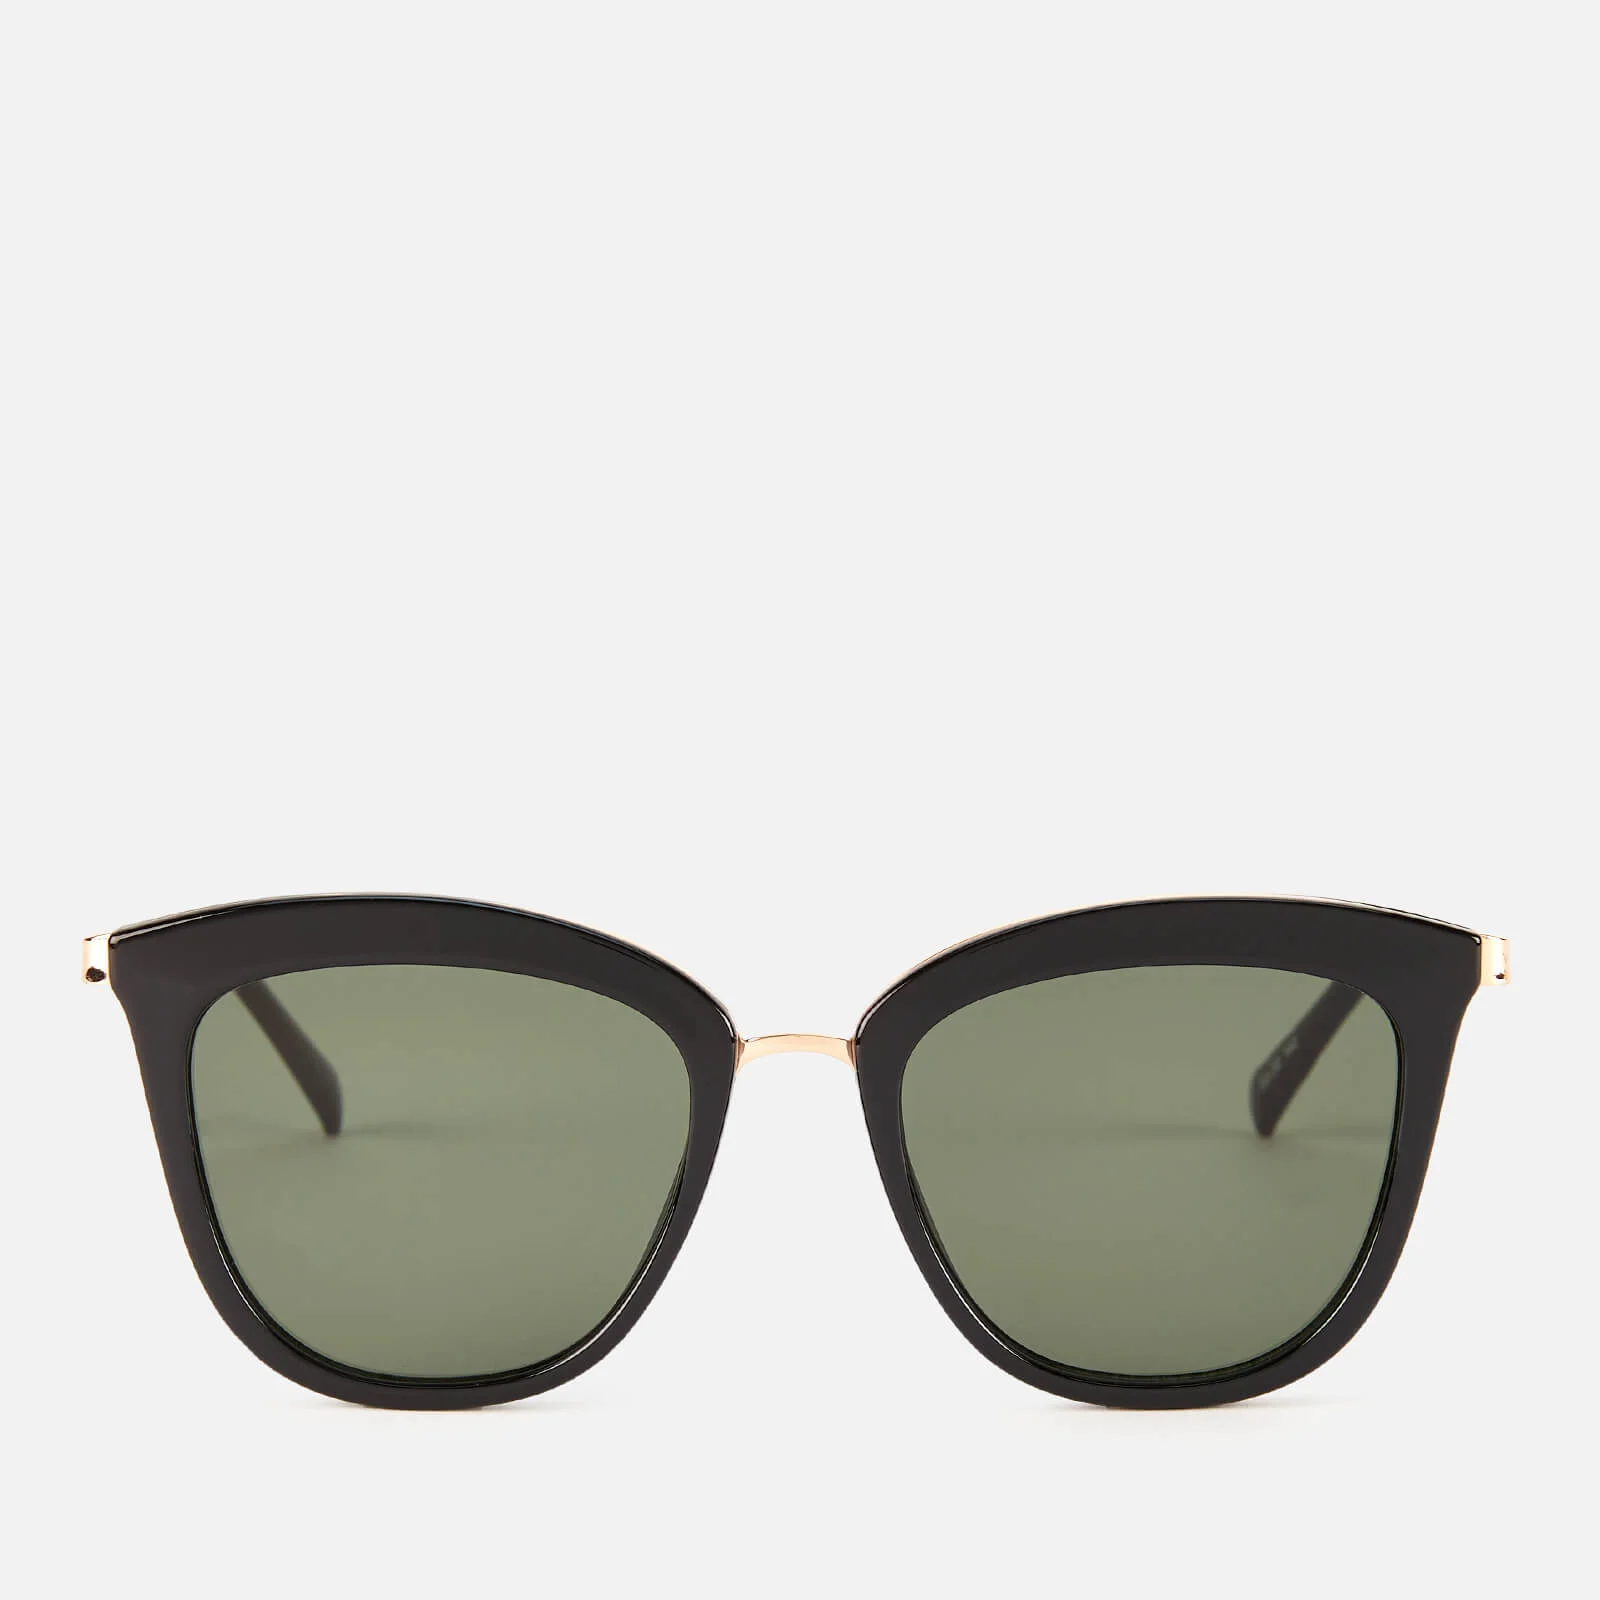 Le Specs Women's Caliente Sunglasses - Black/Gold Image 1